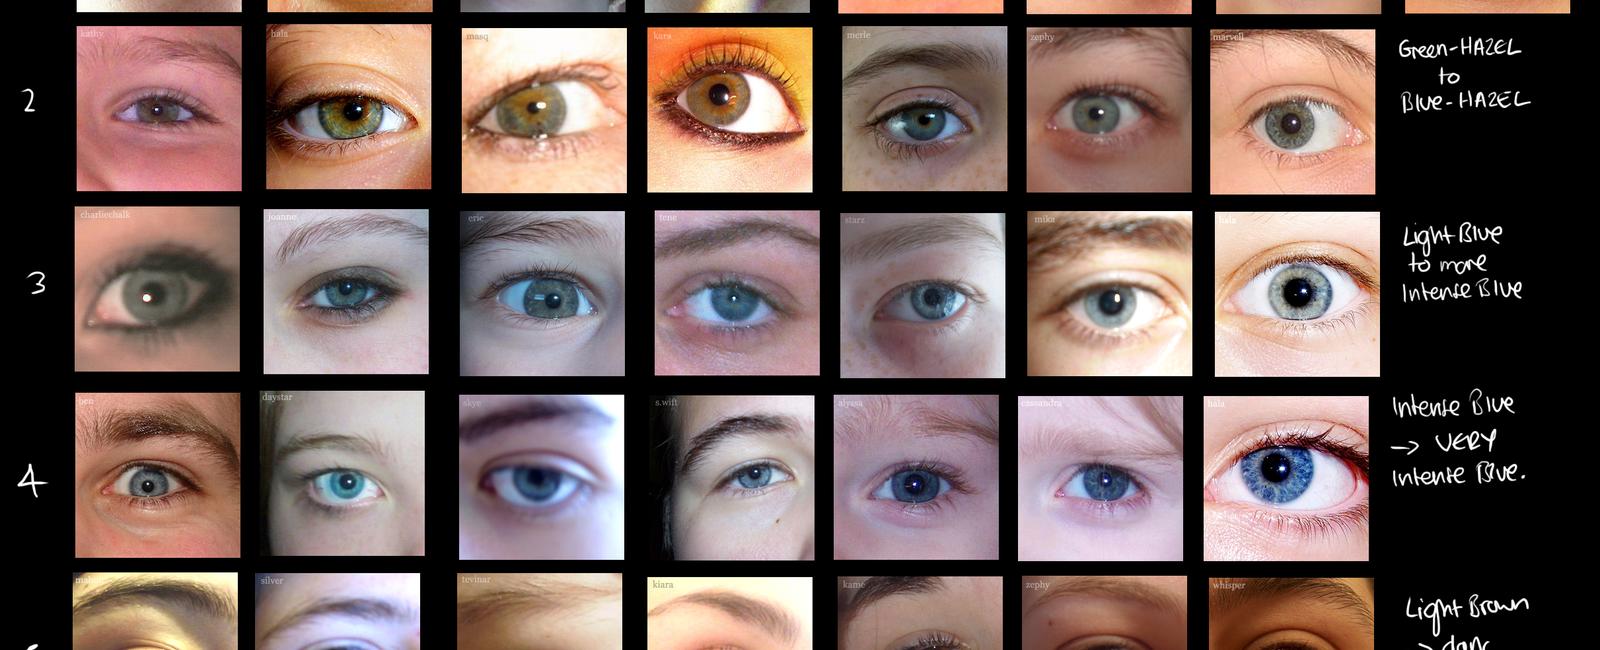 A human eye can distinguish between 30 shades of gray